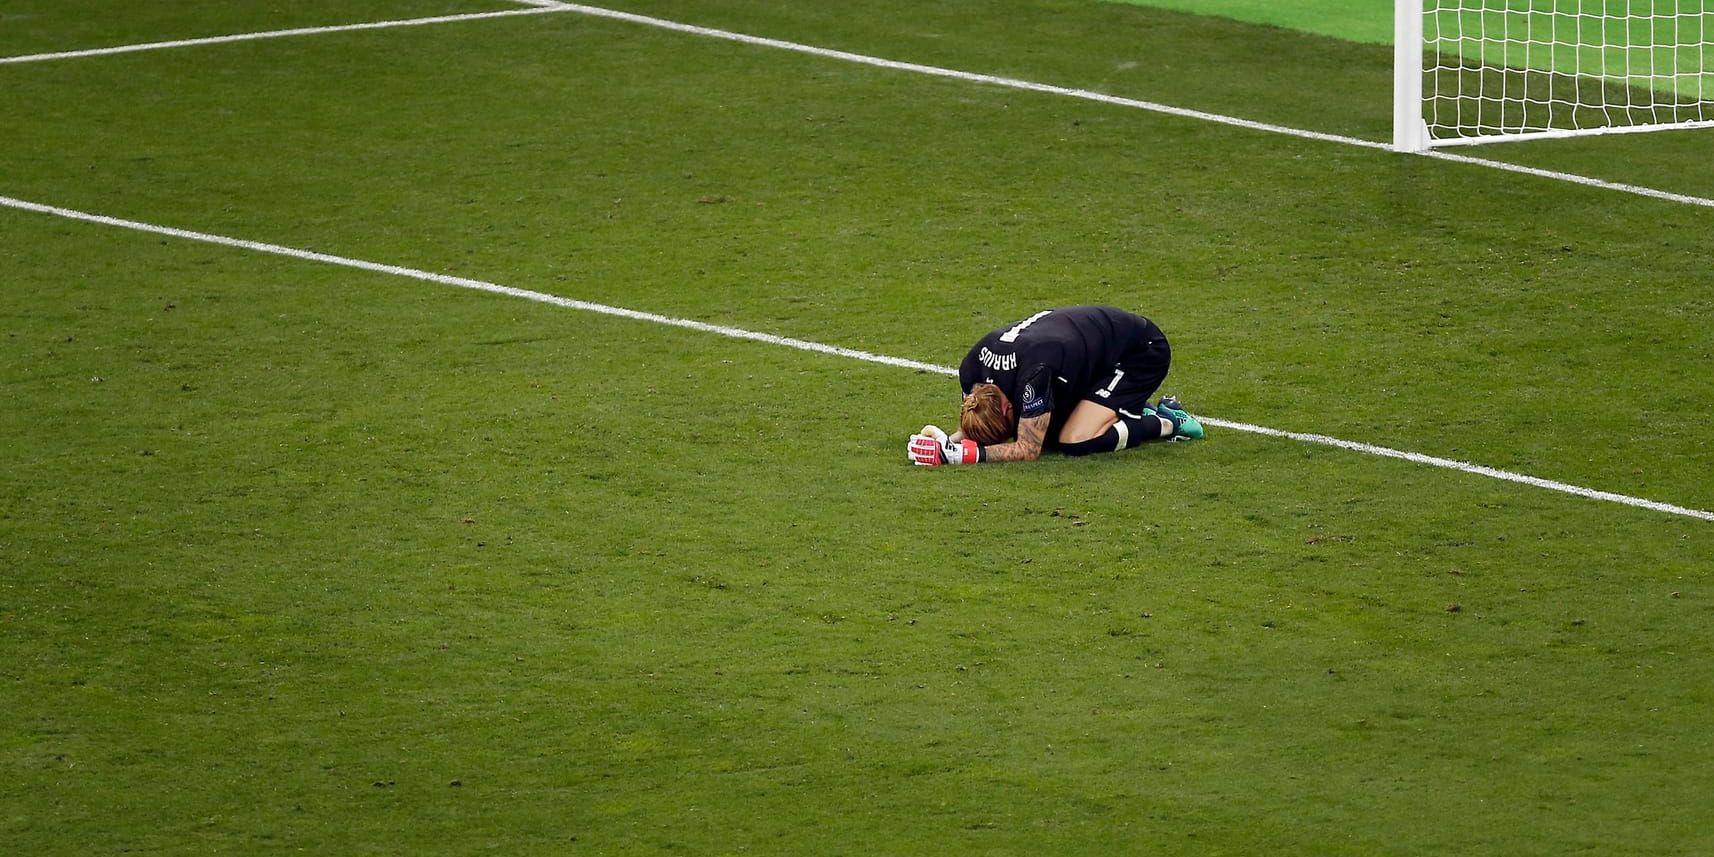 Liverpoolmålvakten Loris Karius blev syndabock i Champions League-finalen mot real Madrid. Kanske berodde hans misstag på hjärnskakning. Arkivbild.